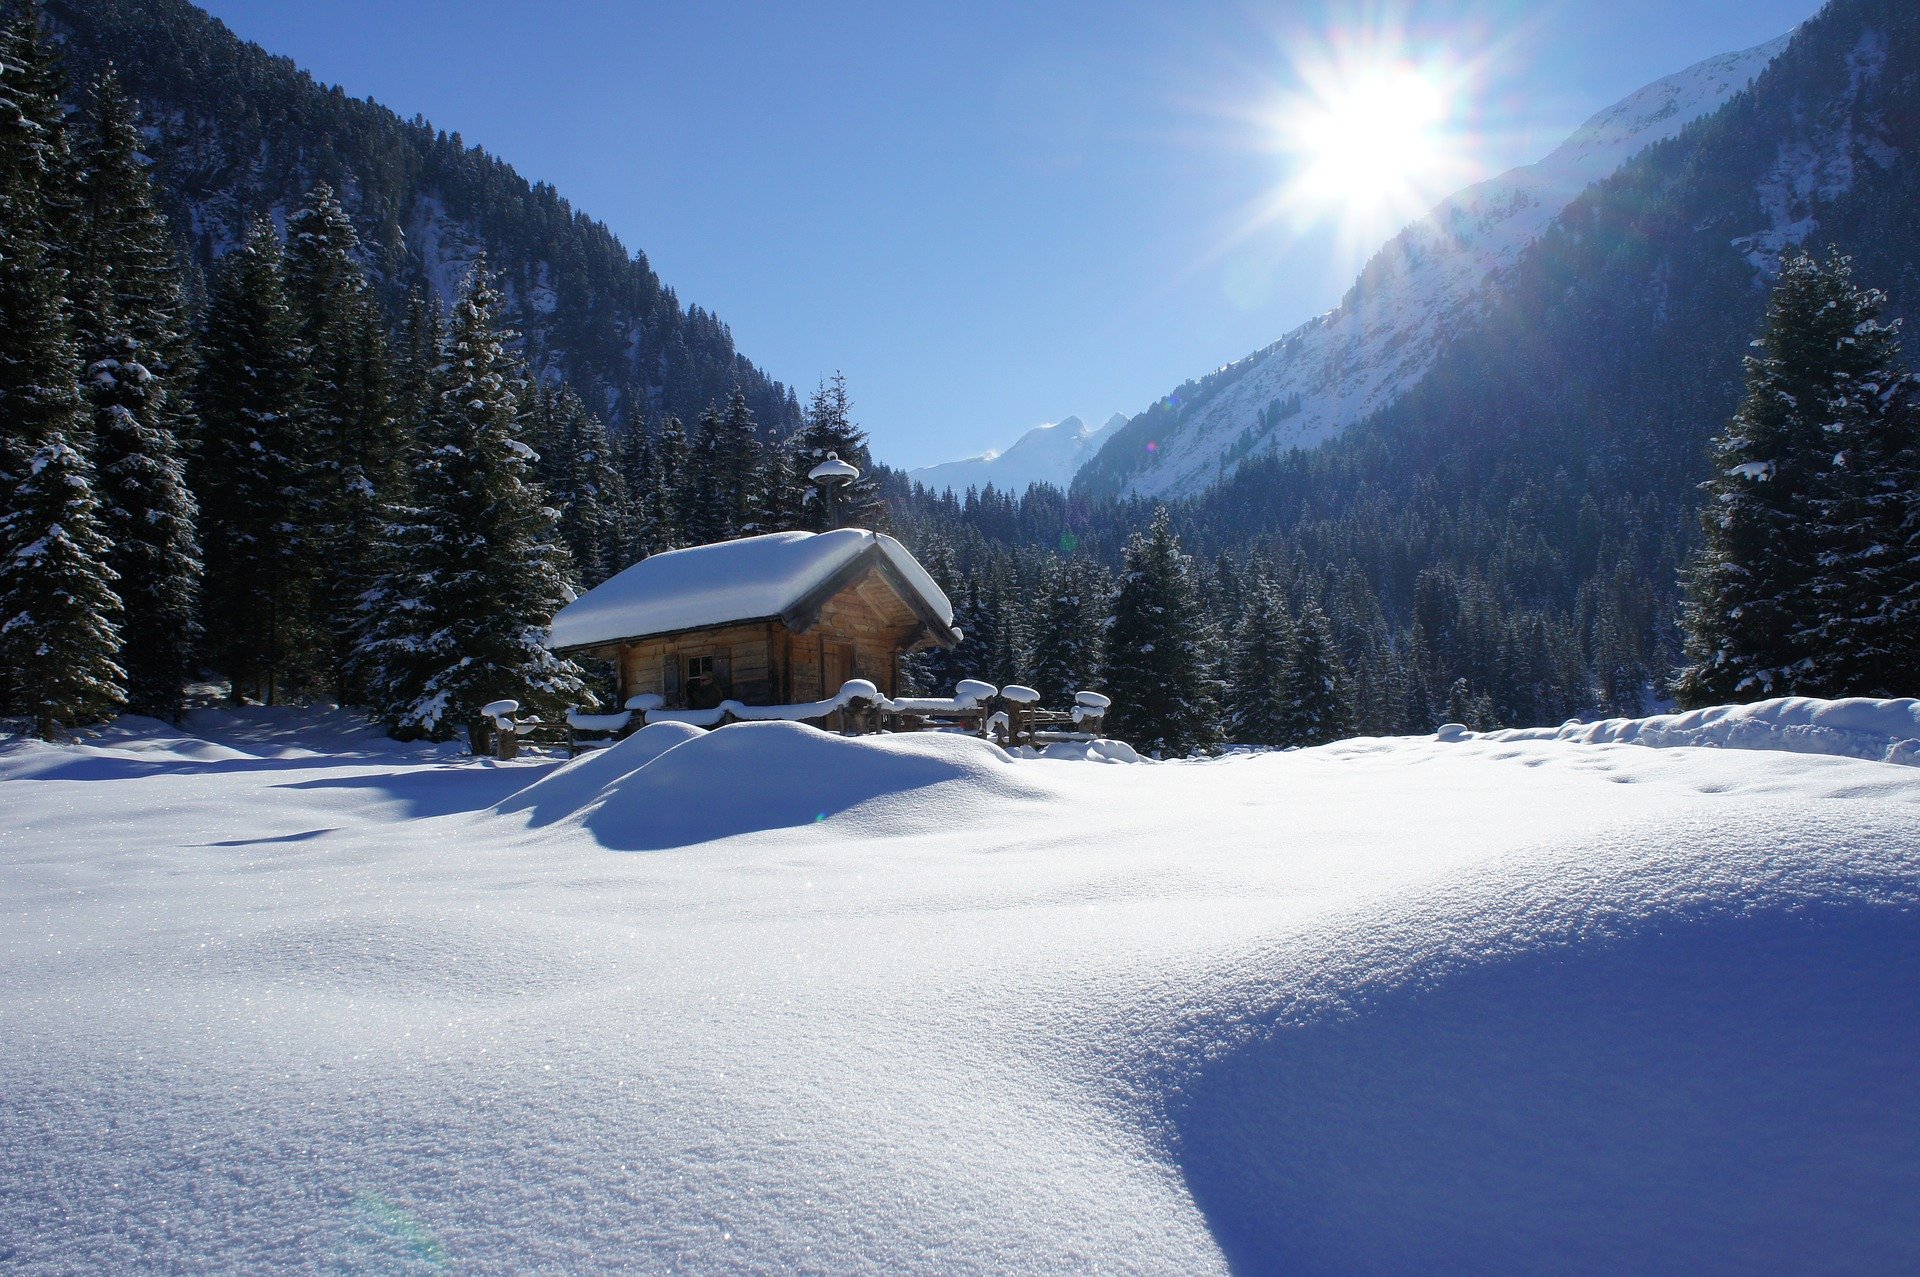 chata ve sněhu